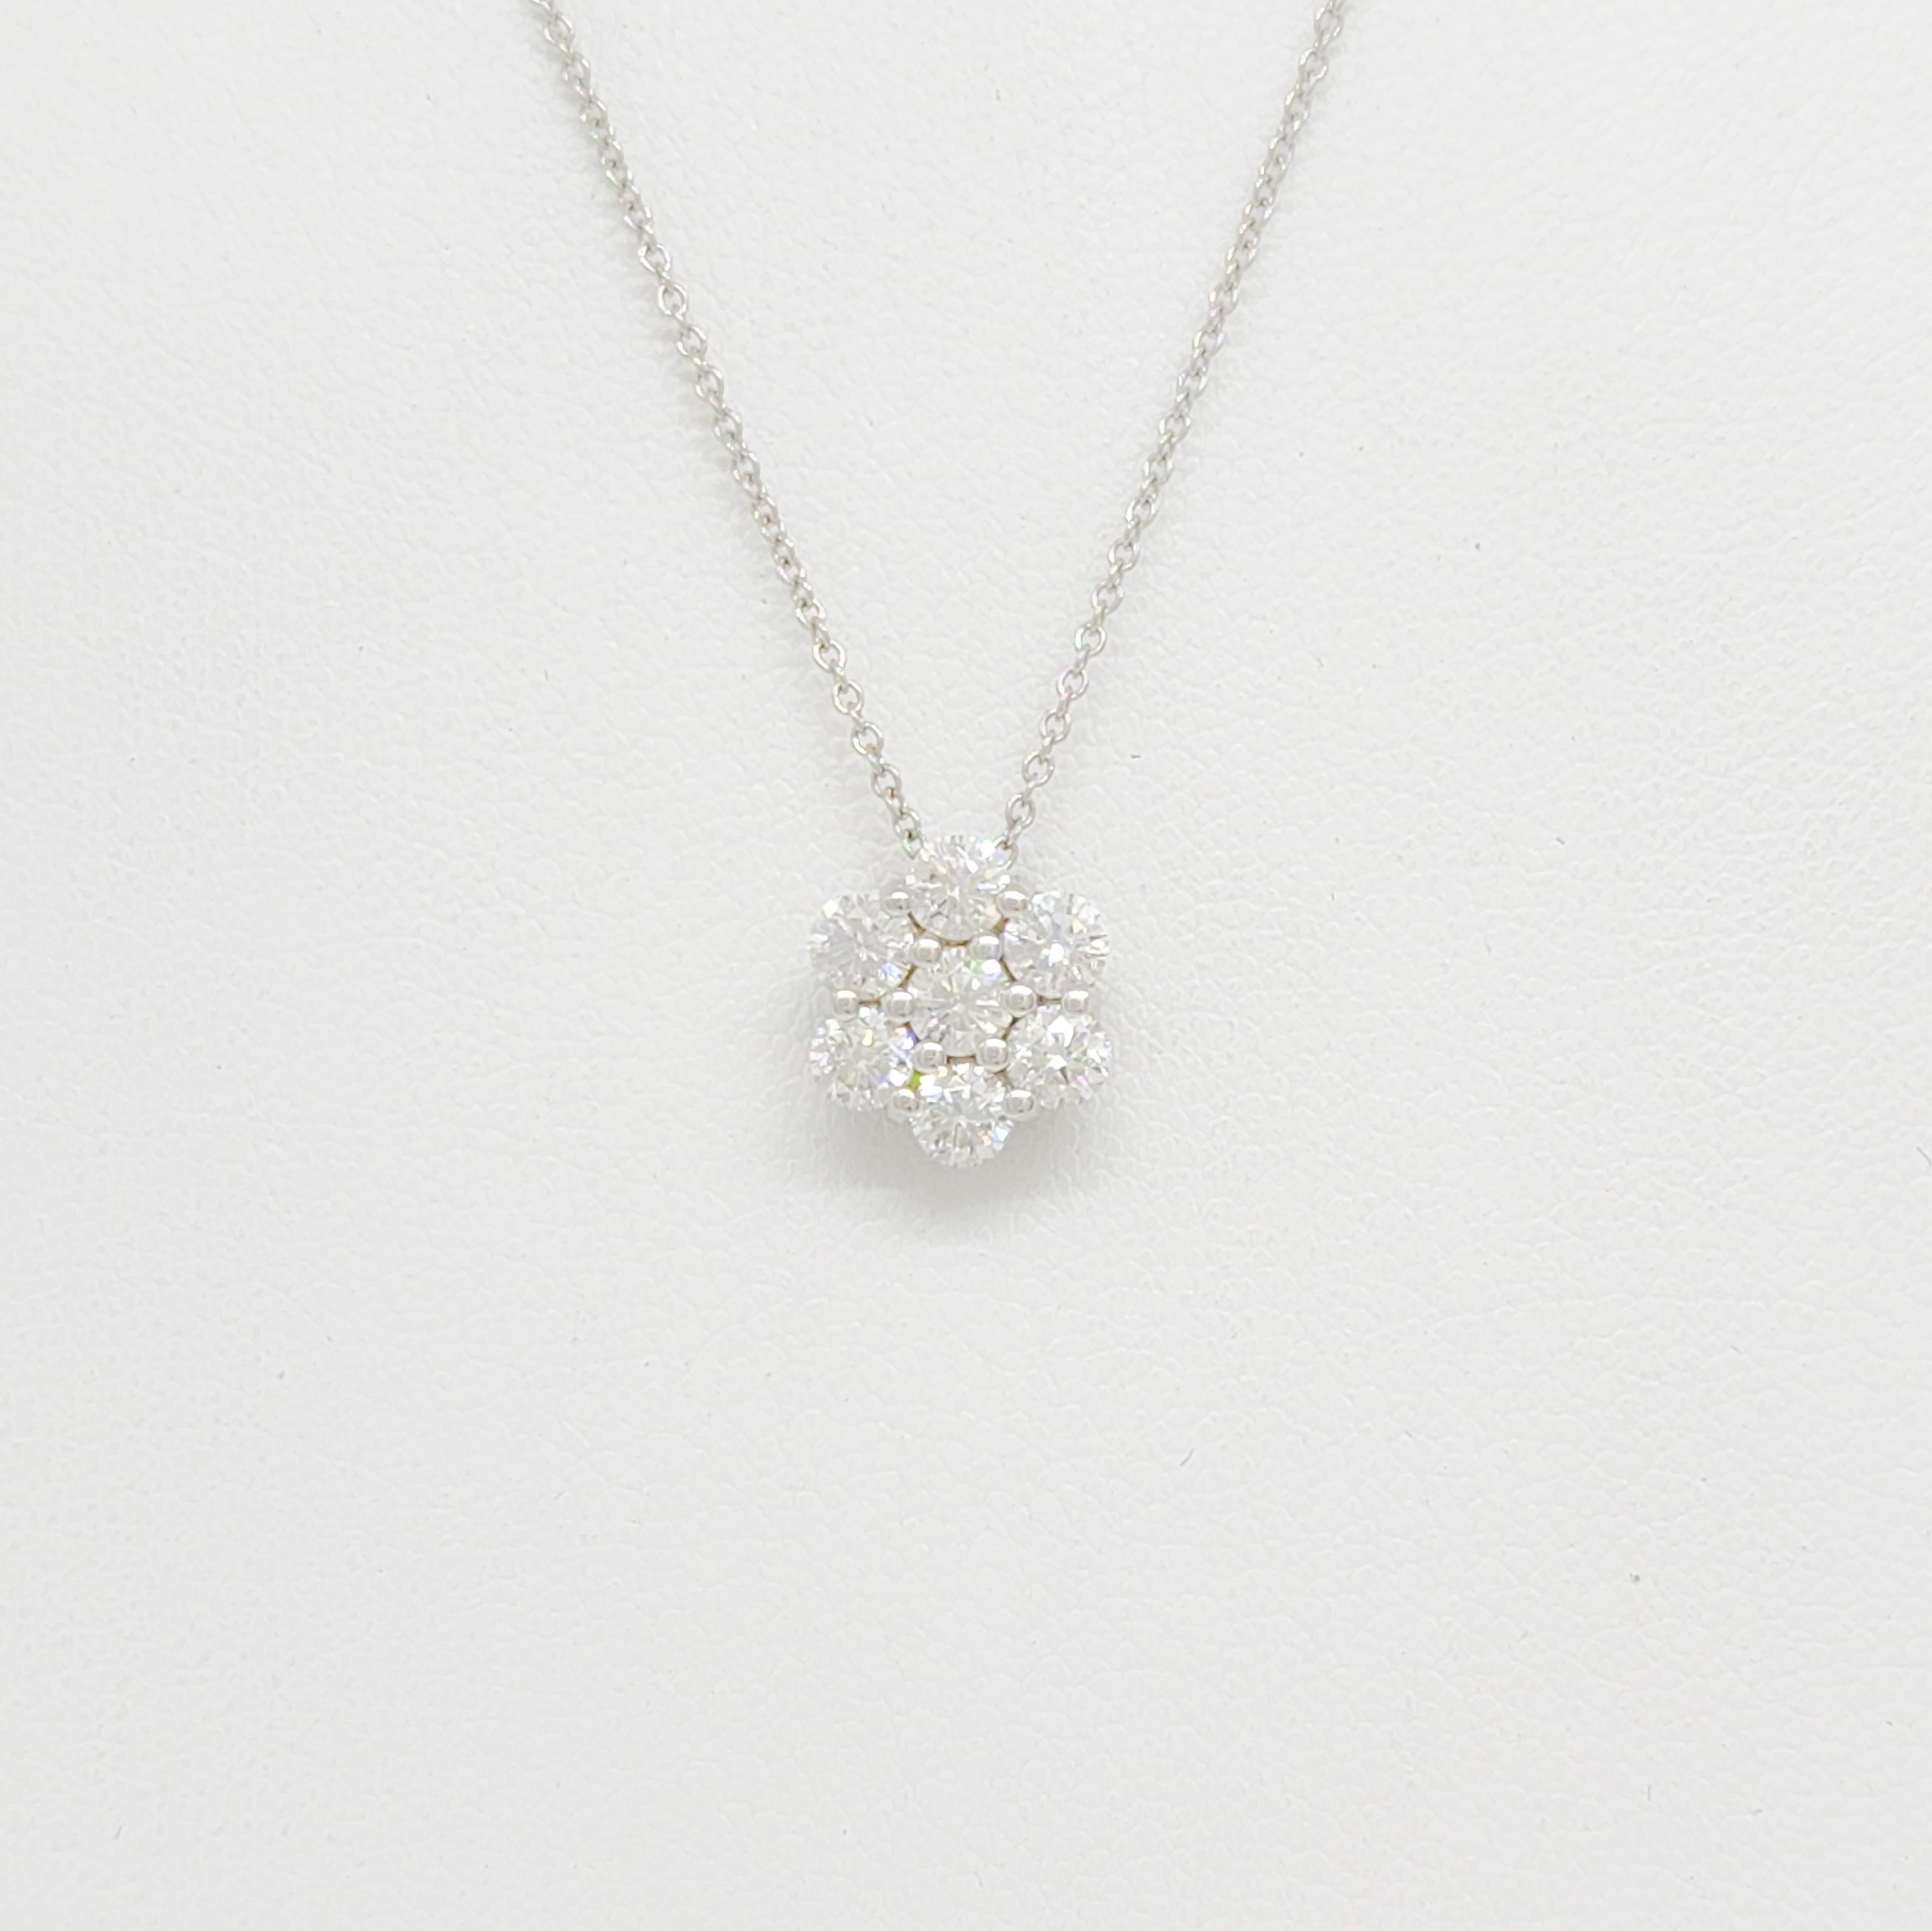 Beautiful 1.00 ct. white diamond flower cluster pendant handmade in 14k white gold.  Length is 18